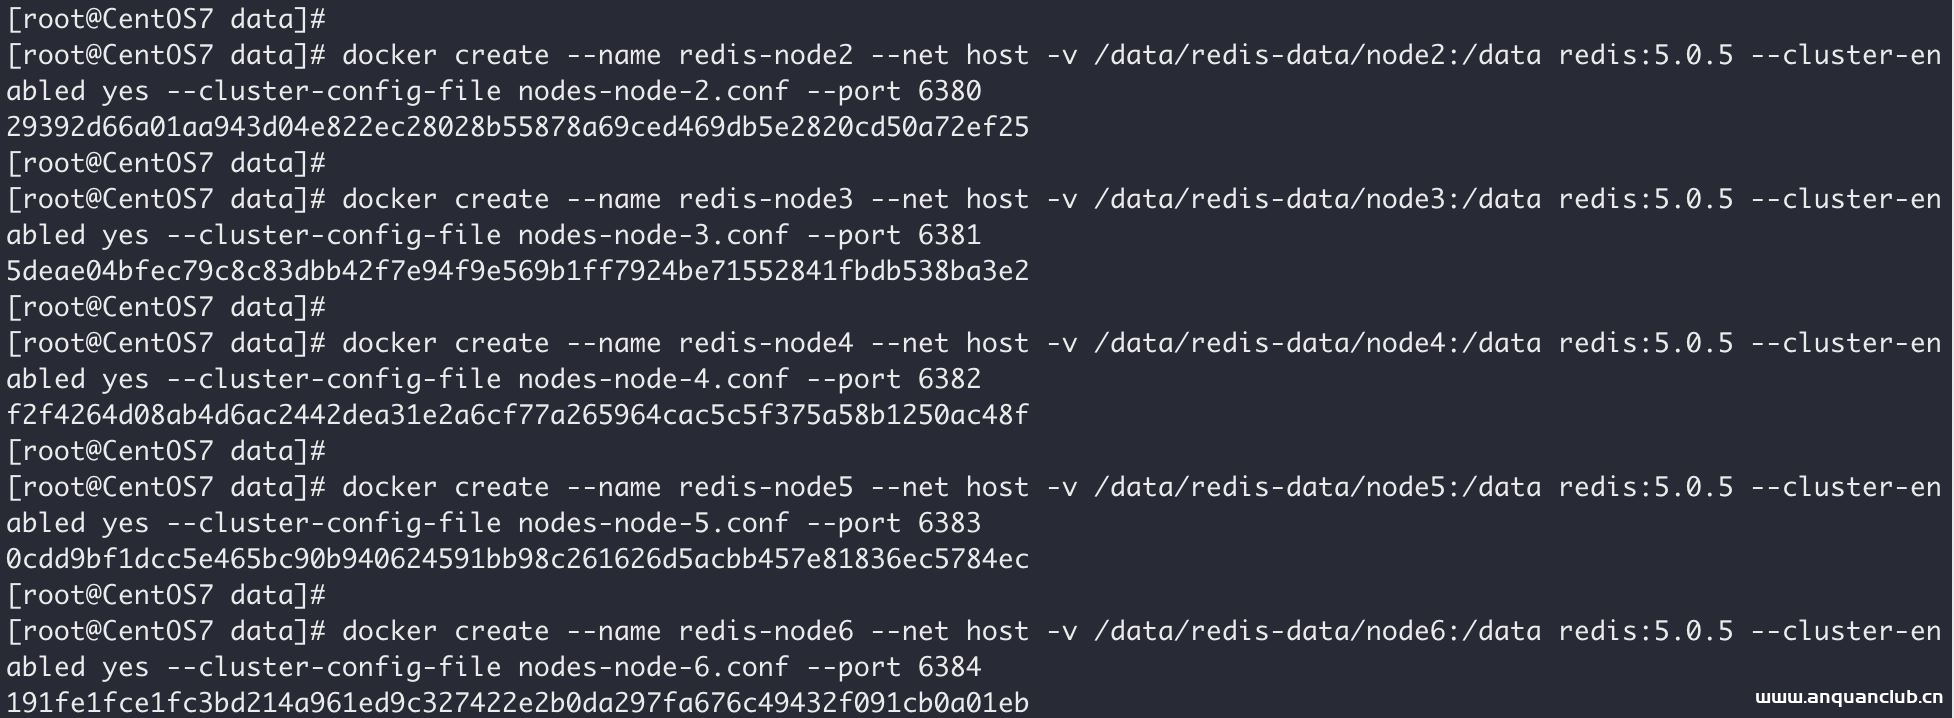 基于Docker搭建Redis主从集群的实现_docker-安全小天地